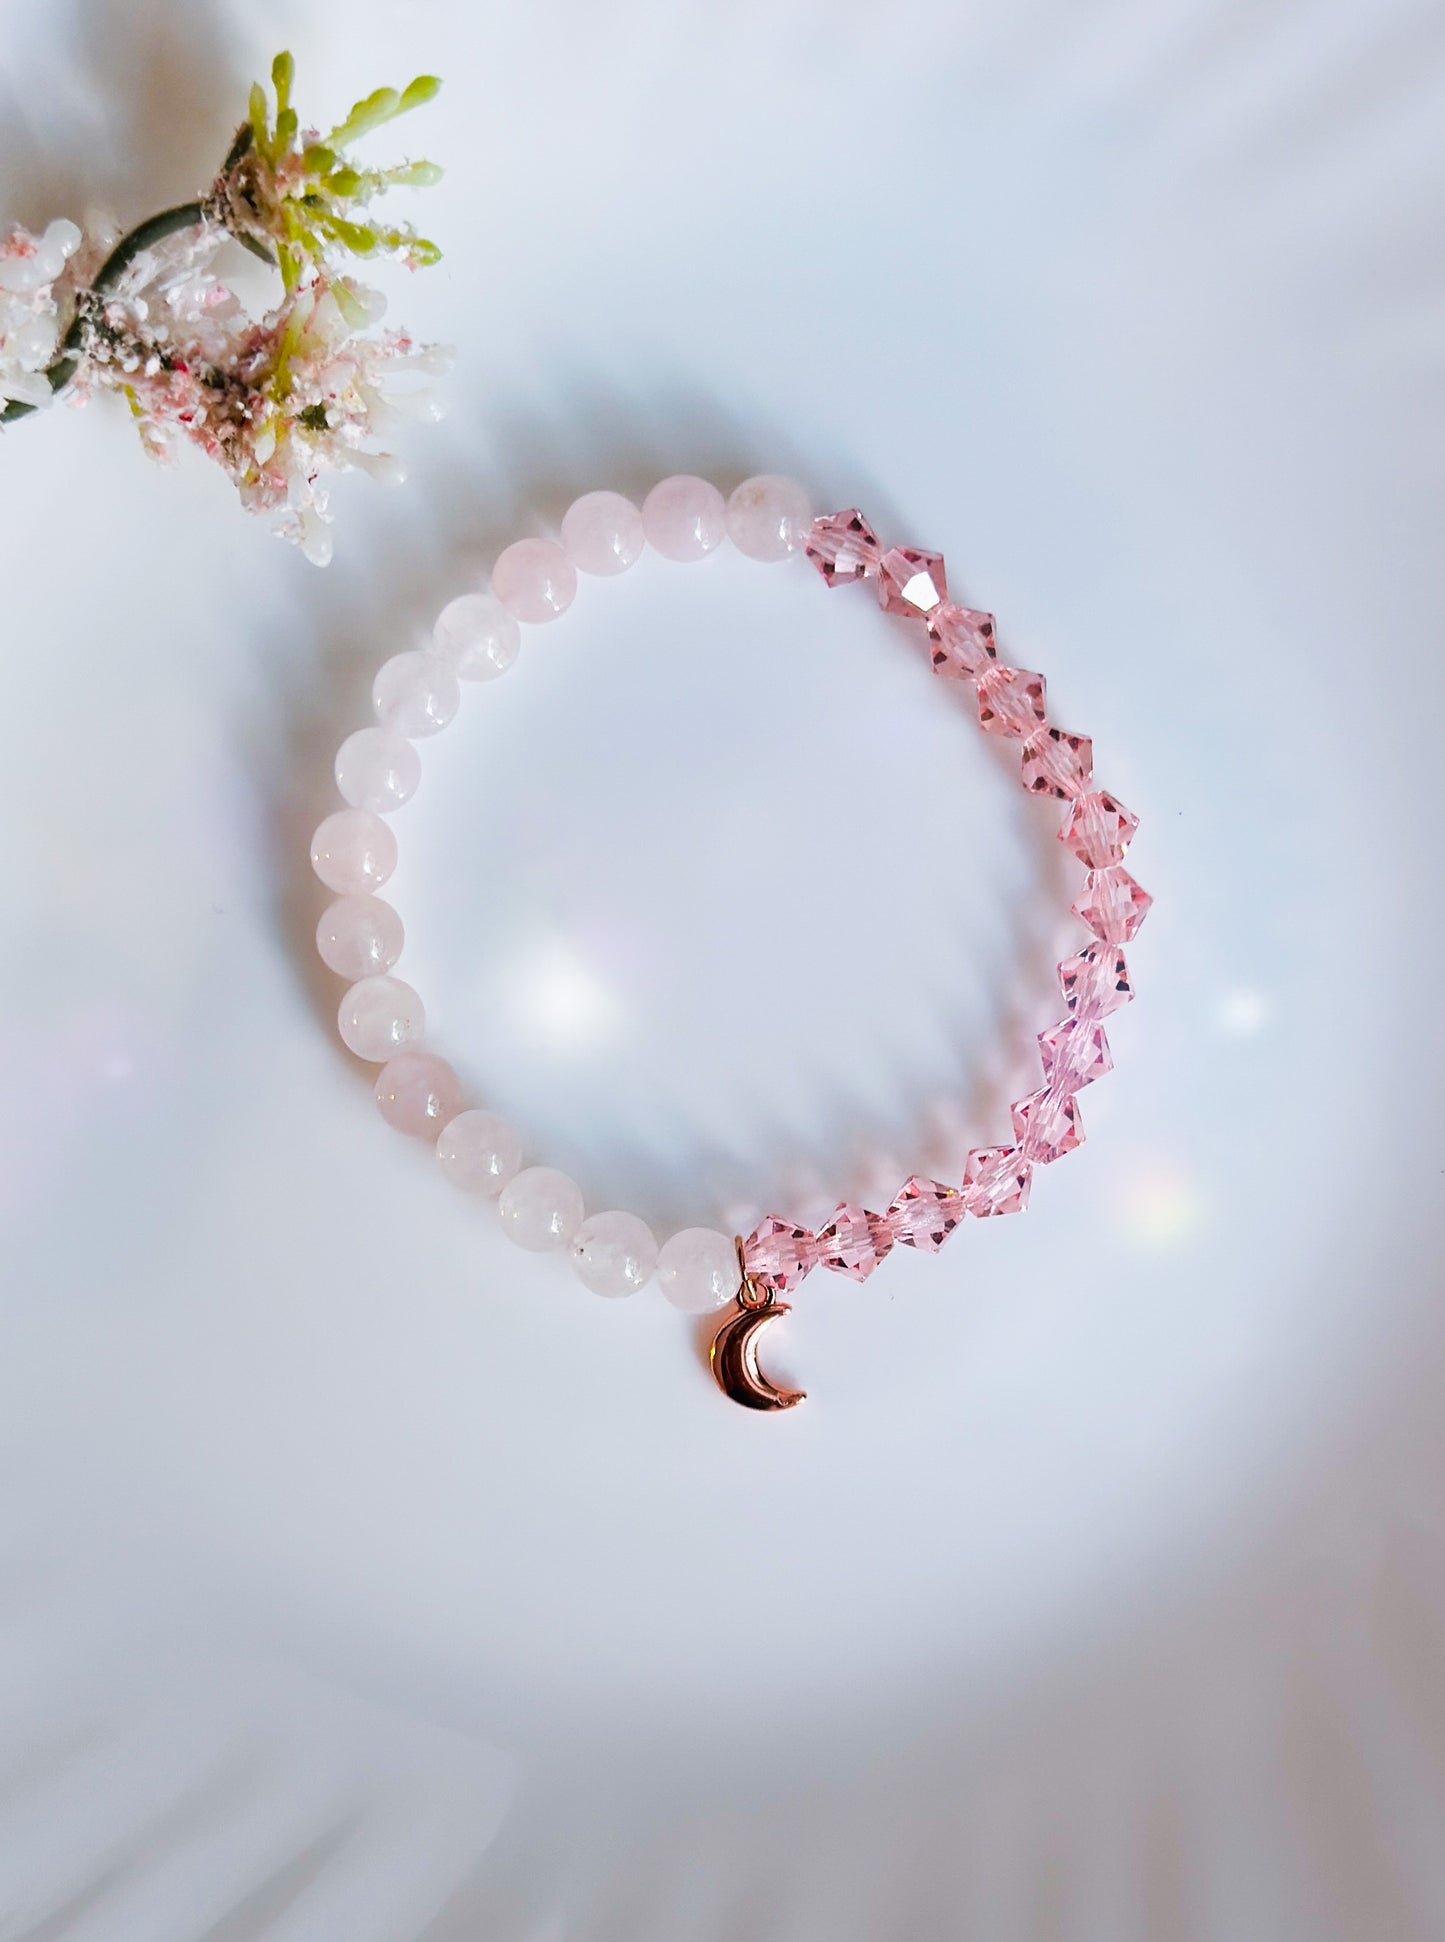 The feminine moon bracelet